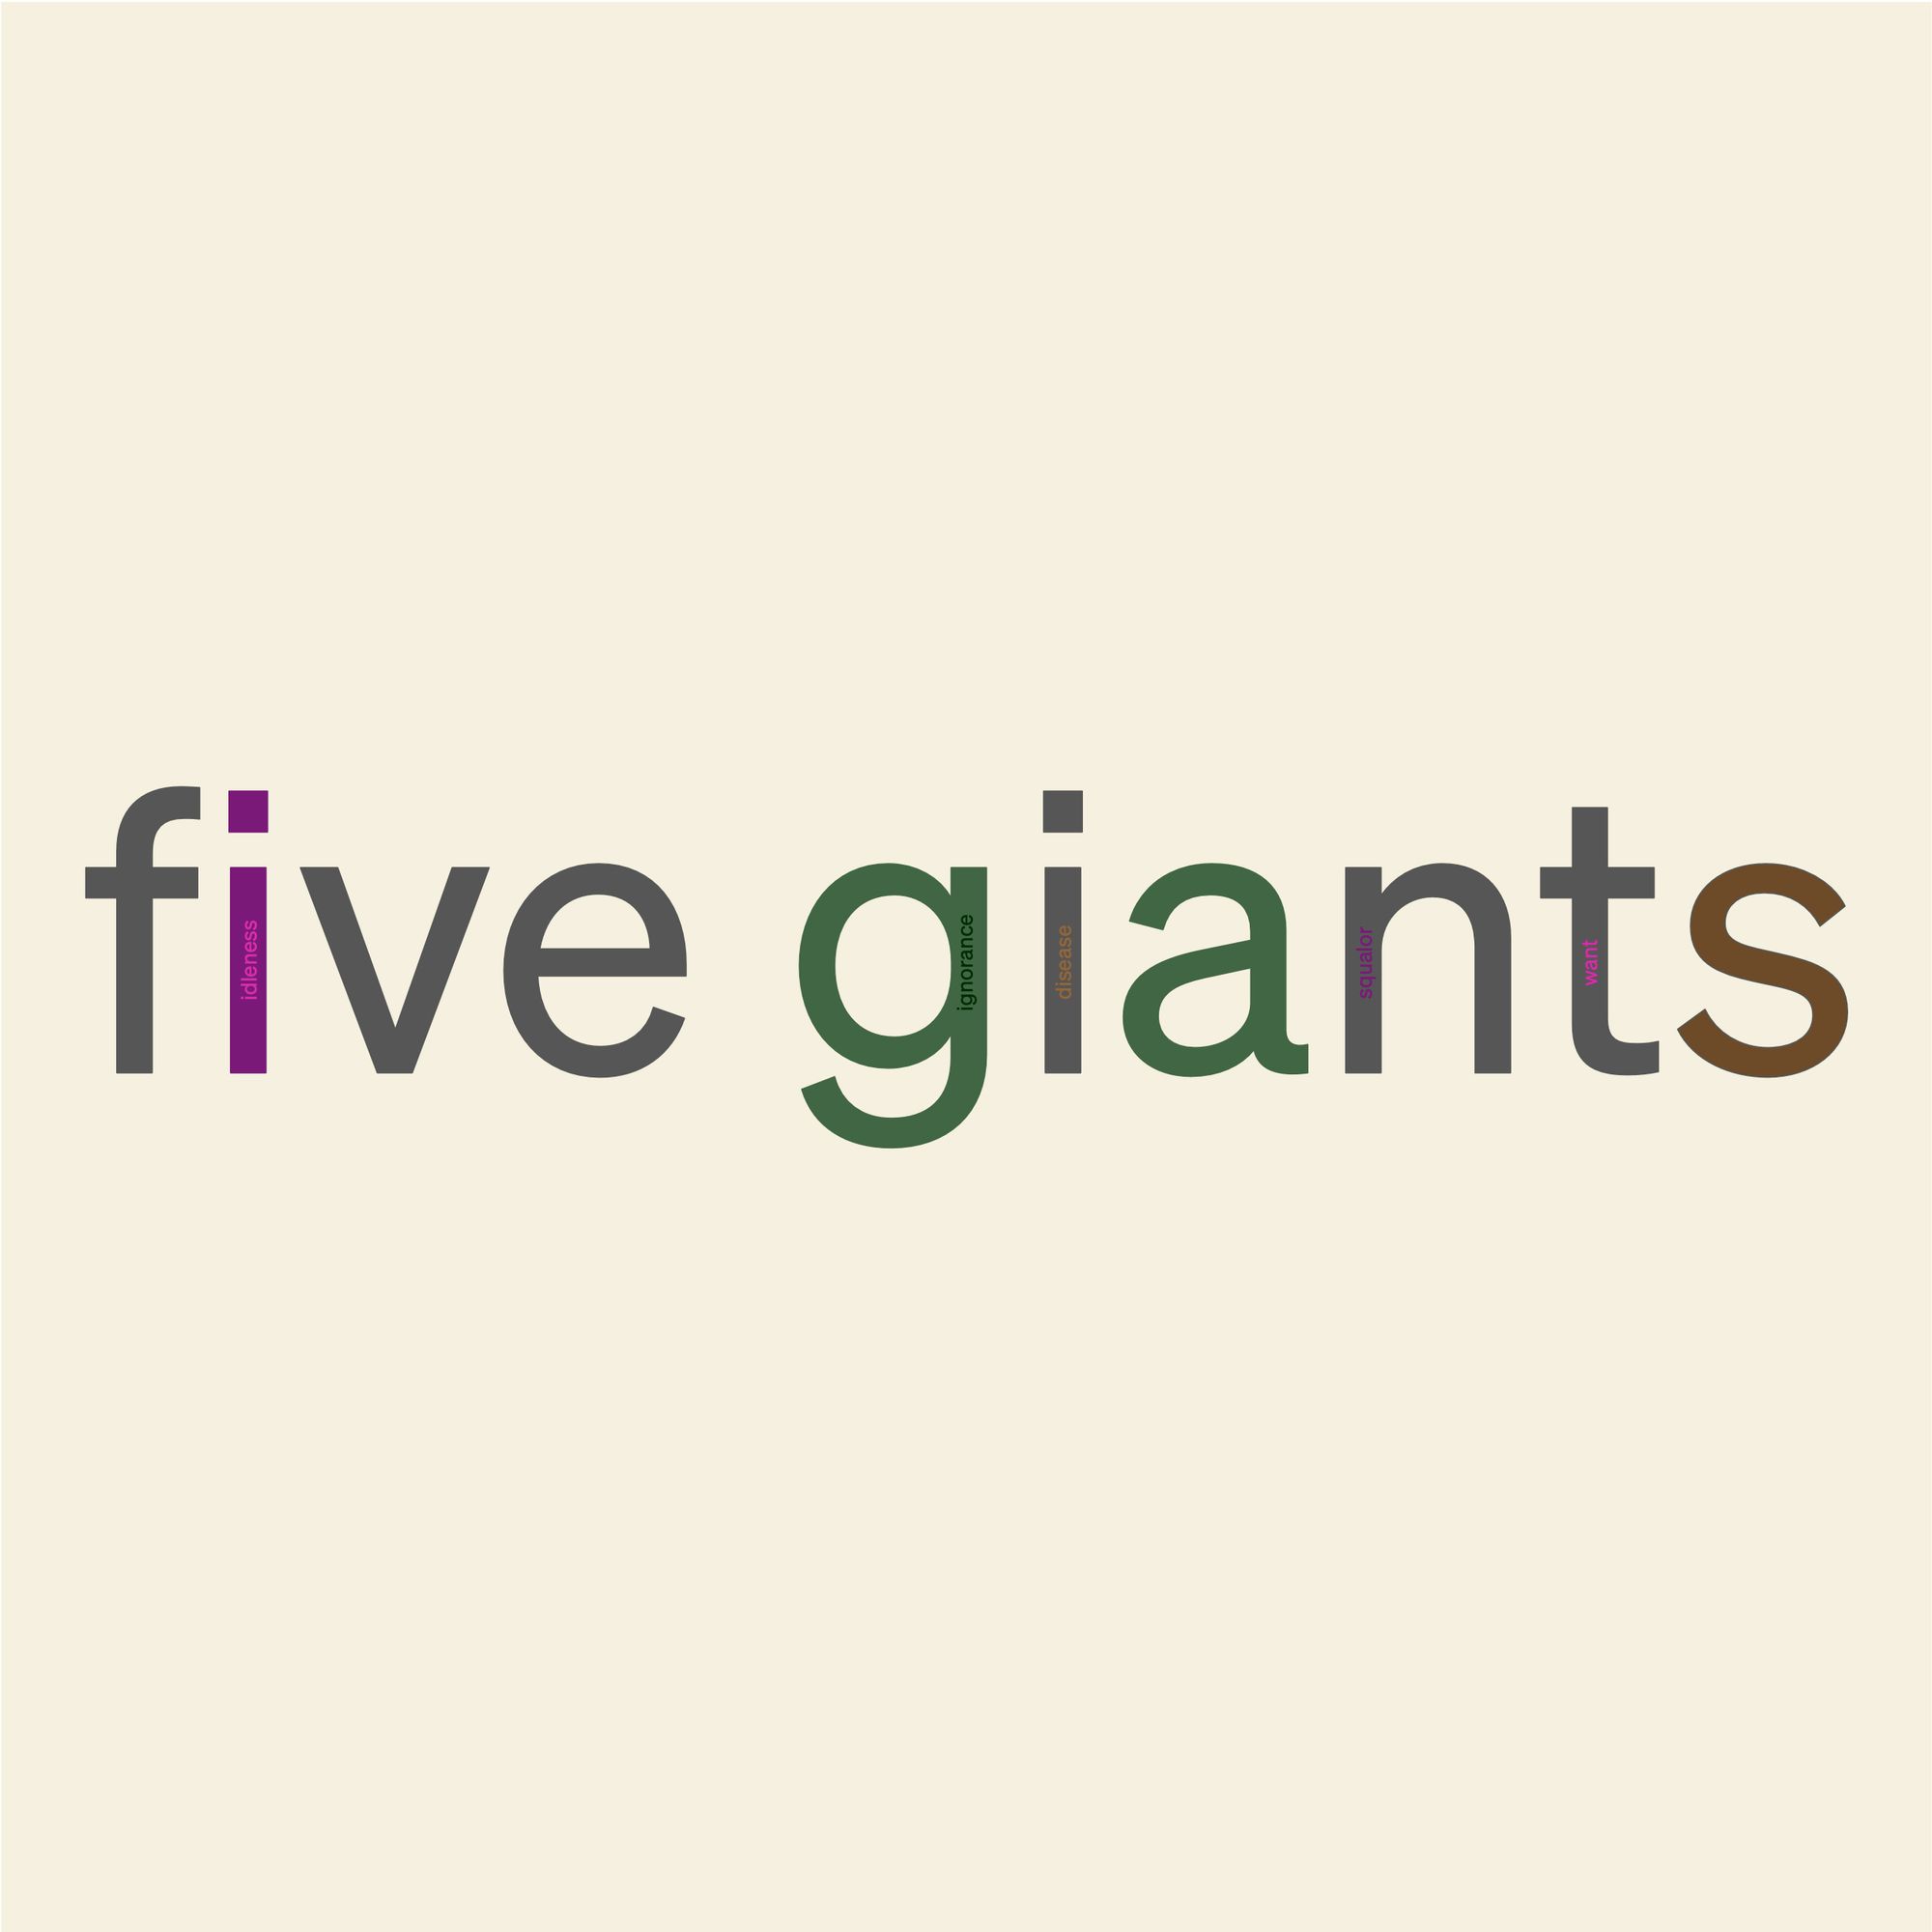 Five Giants